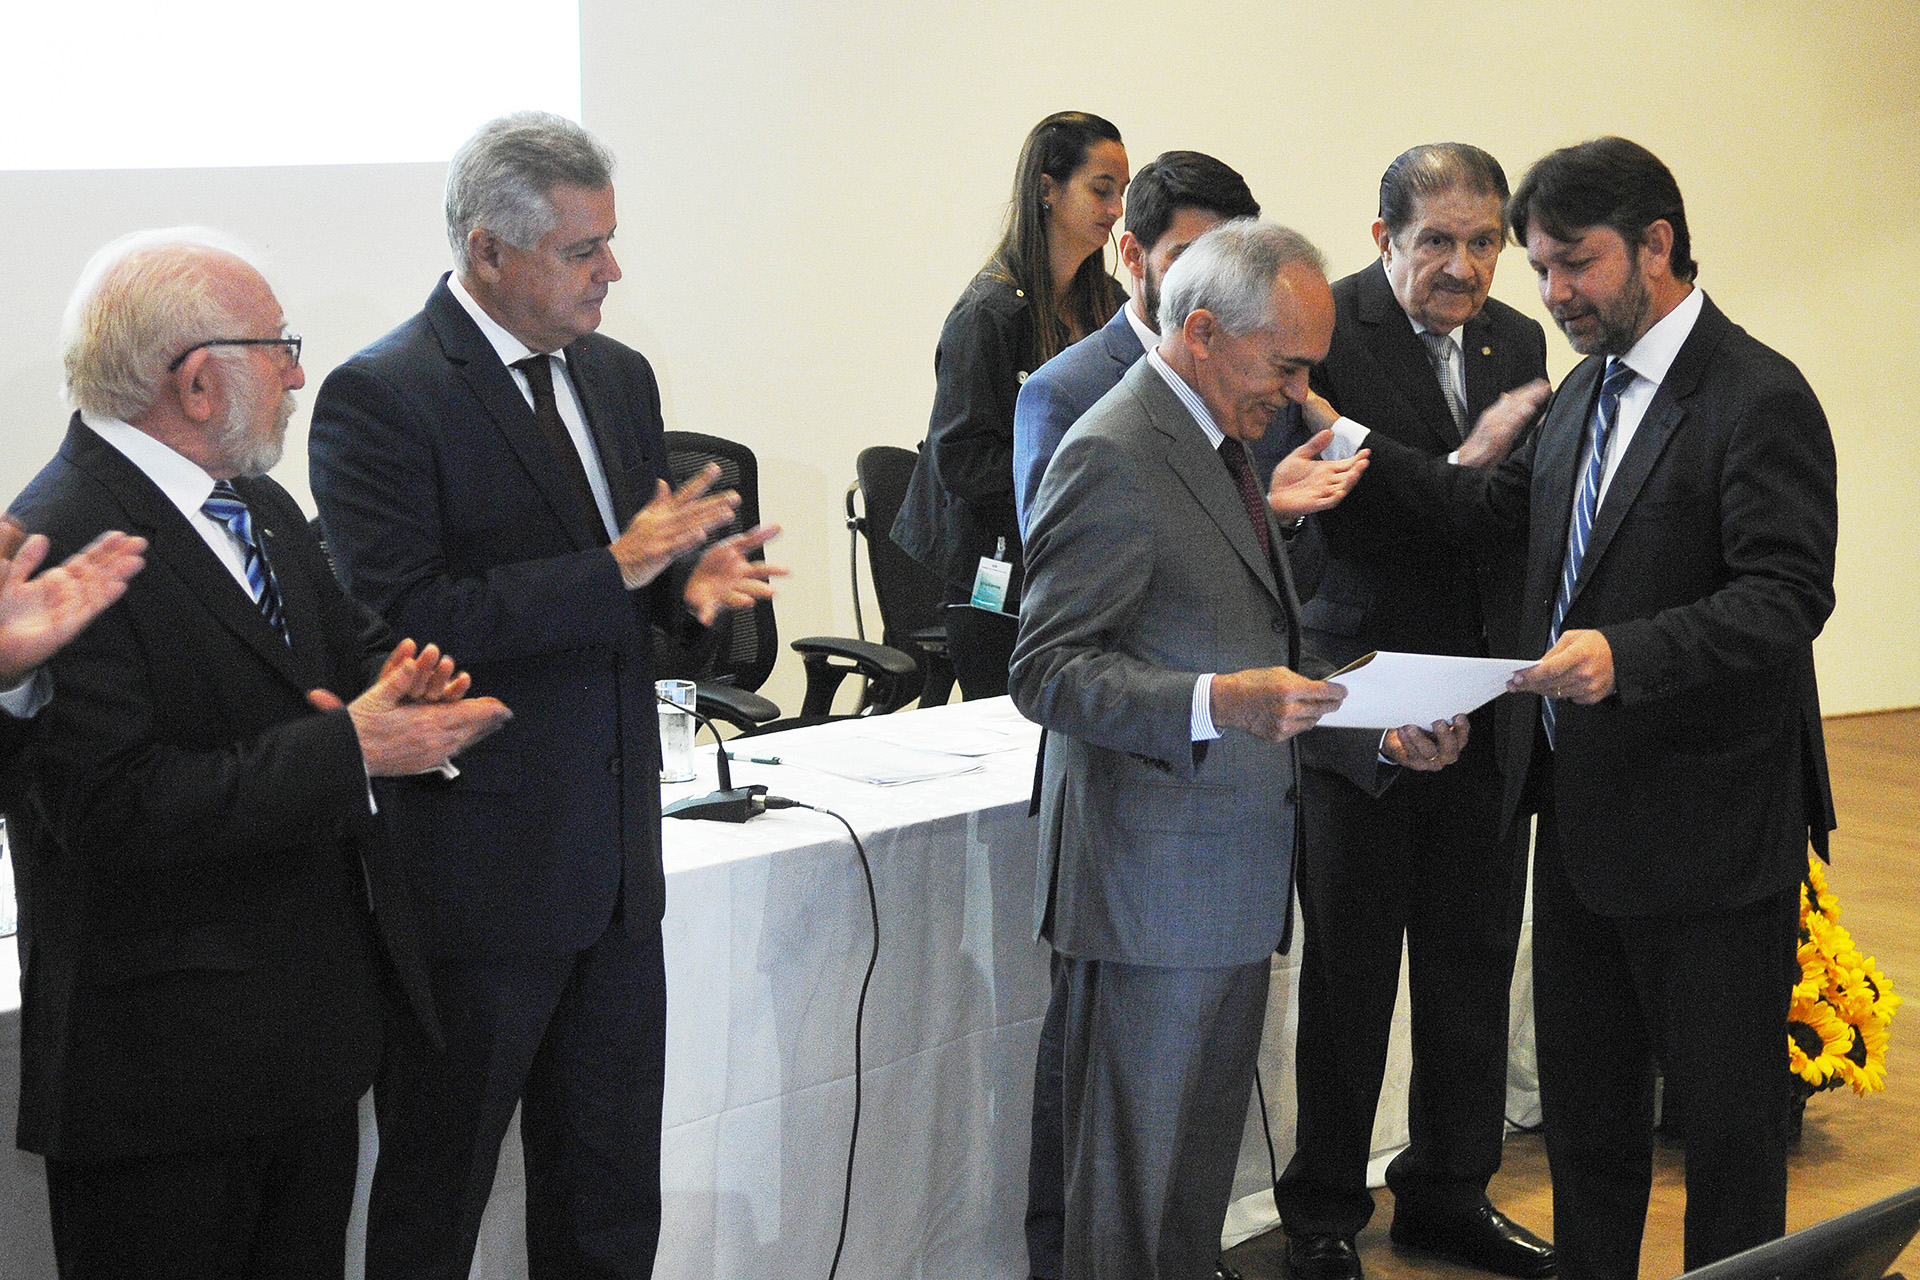 O presidente do Tribunal de Contas da União (TCU), ministro Raimundo Carreiro, recebeu nesta quarta-feira (30) o título de cidadão honorário de Brasília. O reconhecimento foi outorgado em sessão solene no auditório do tribunal.